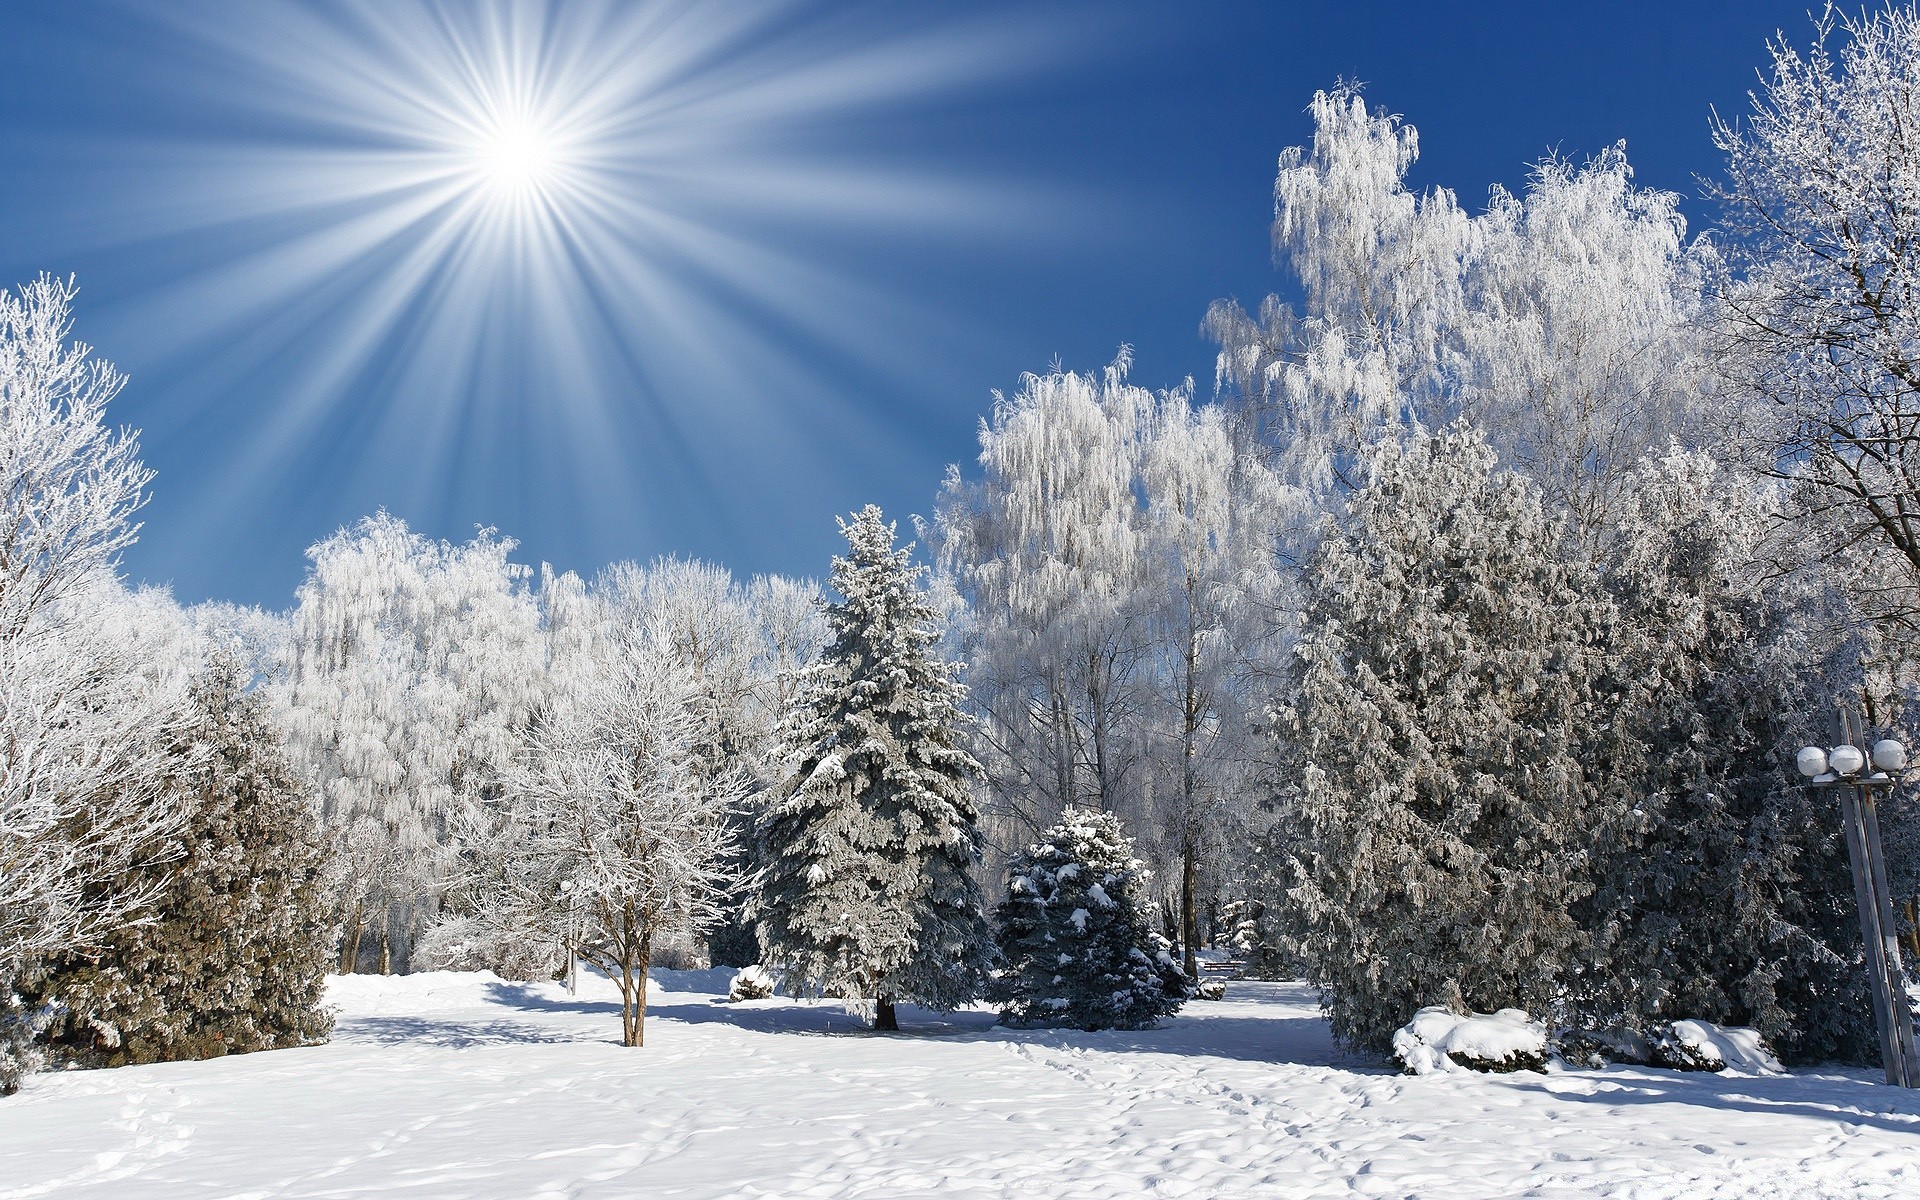 зима снег мороз холодная замороженные лед погода сезон древесины дерево рождество хорошую погоду пургу снег-белый морозный снежное пейзаж яркий